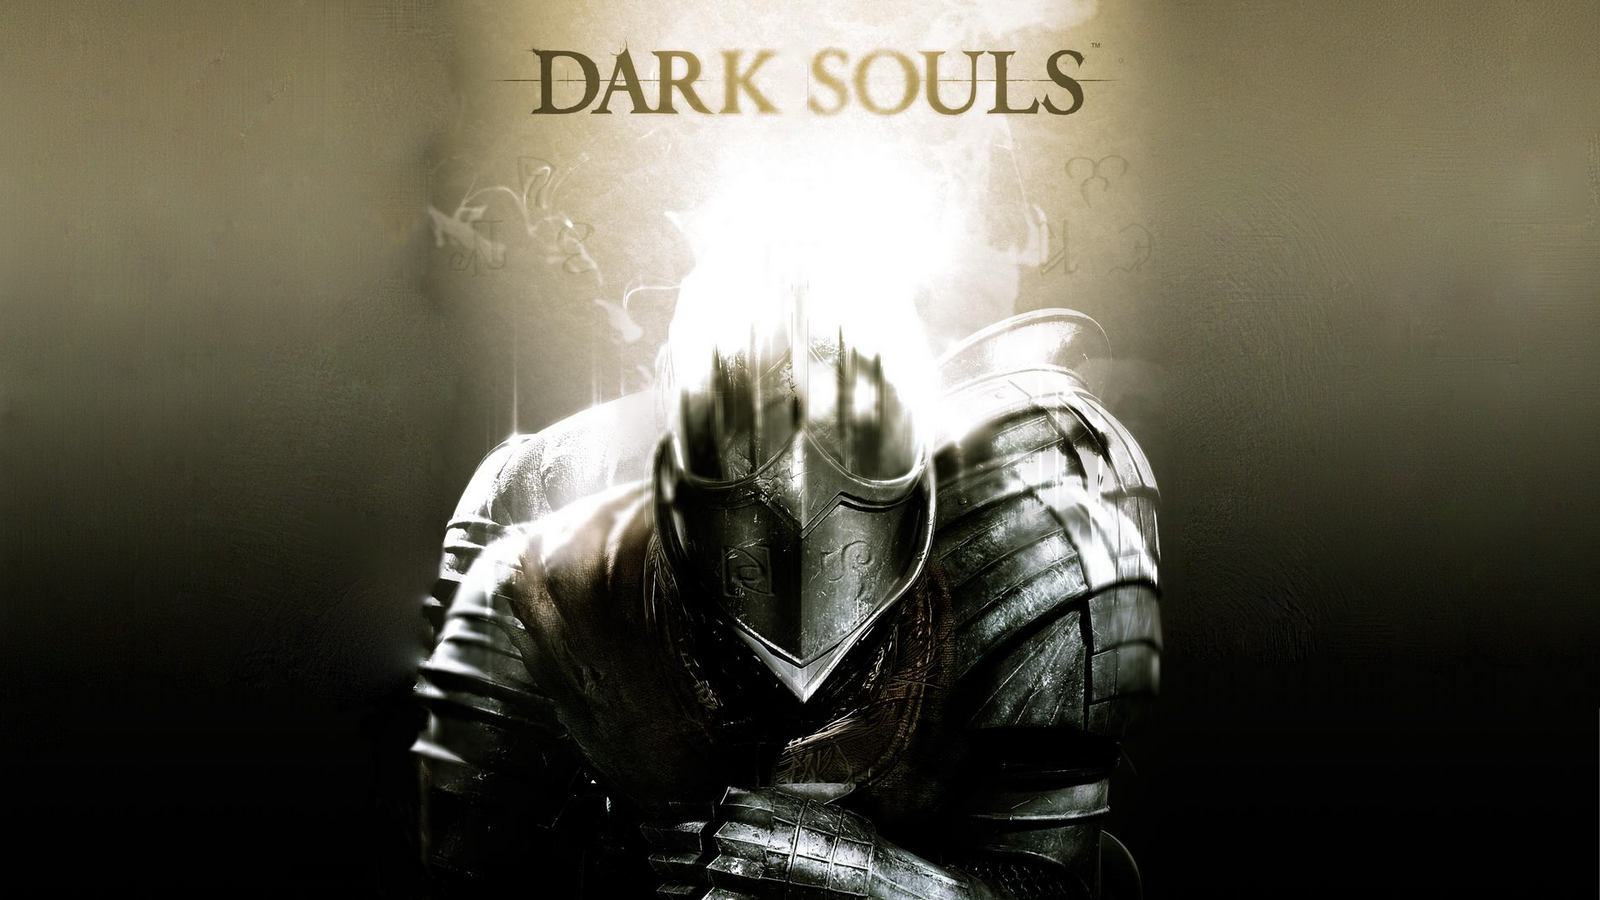 wallpapers de dark souls en hd dark souls es un juego para ps3 lleno 1600x900